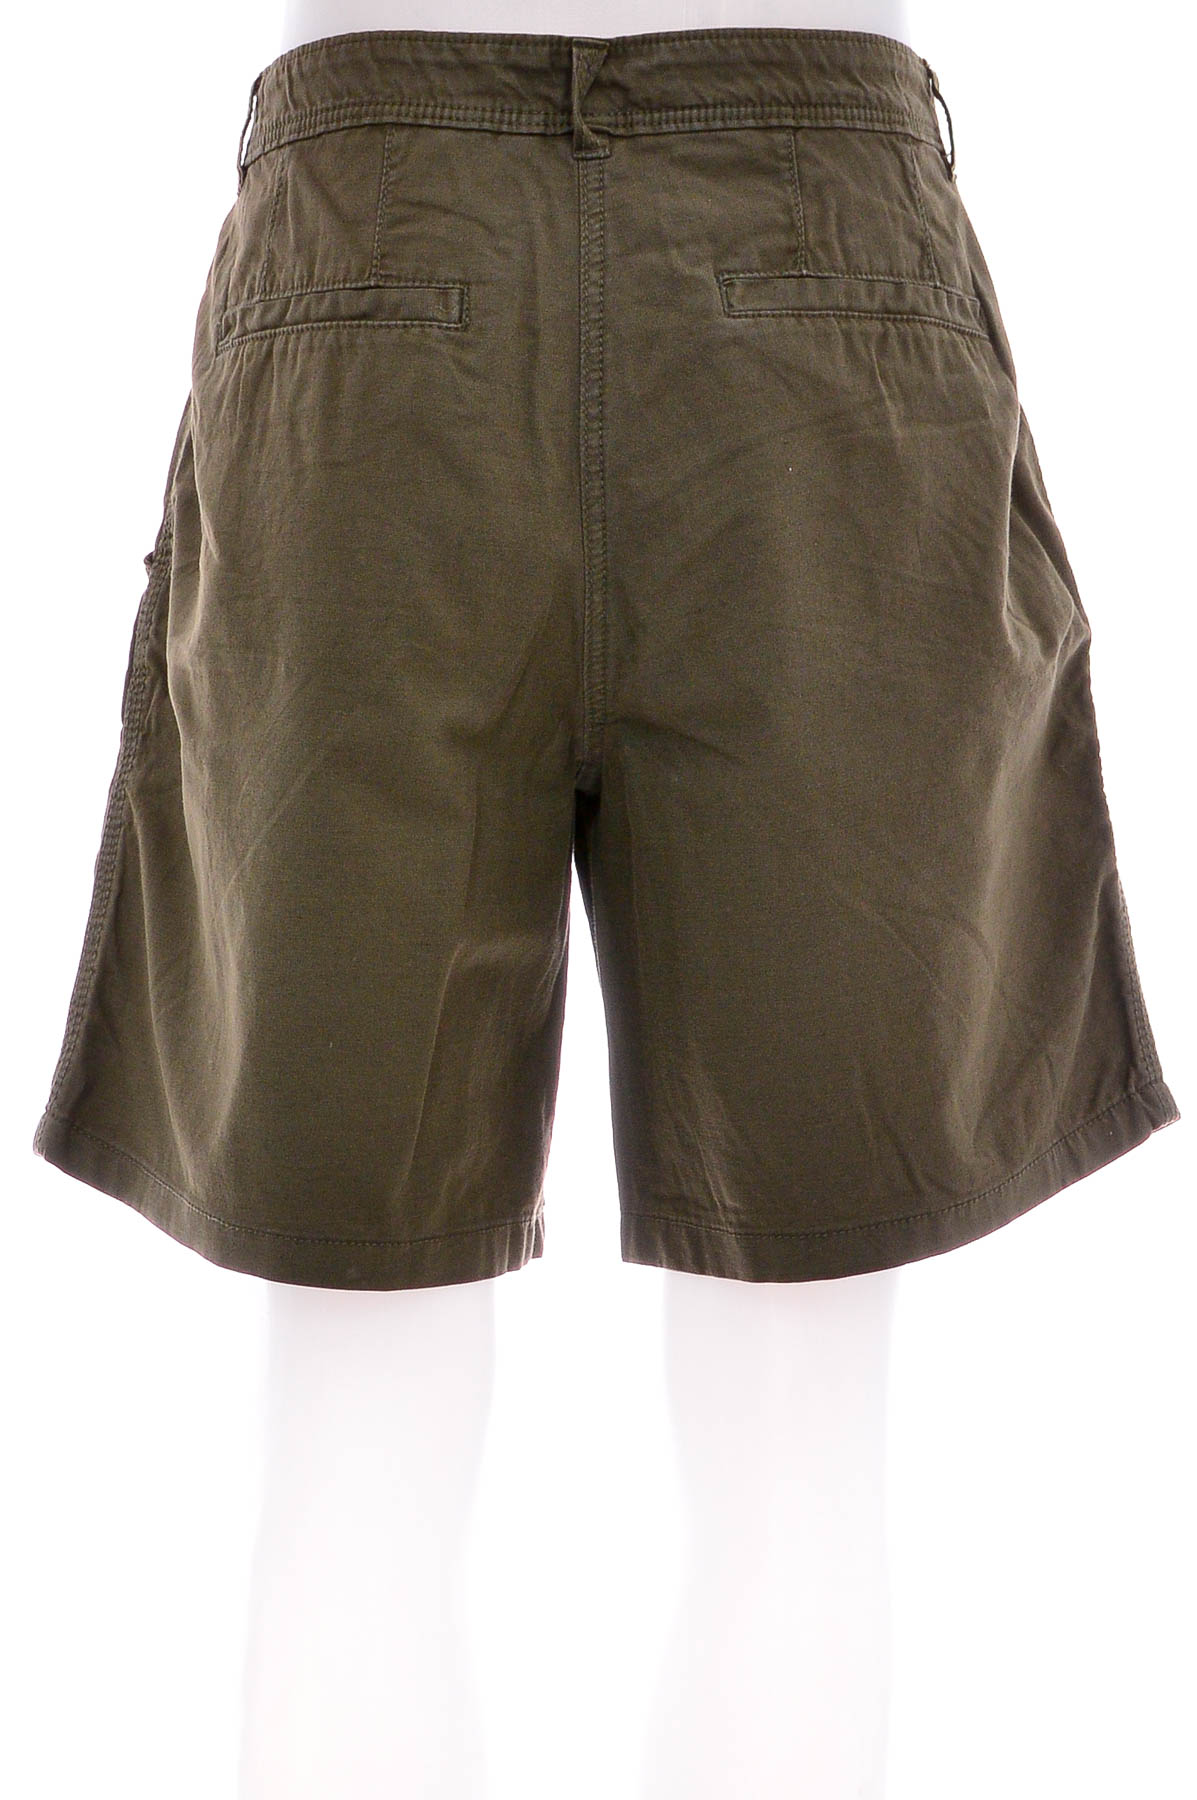 Female shorts - Еdc - 1